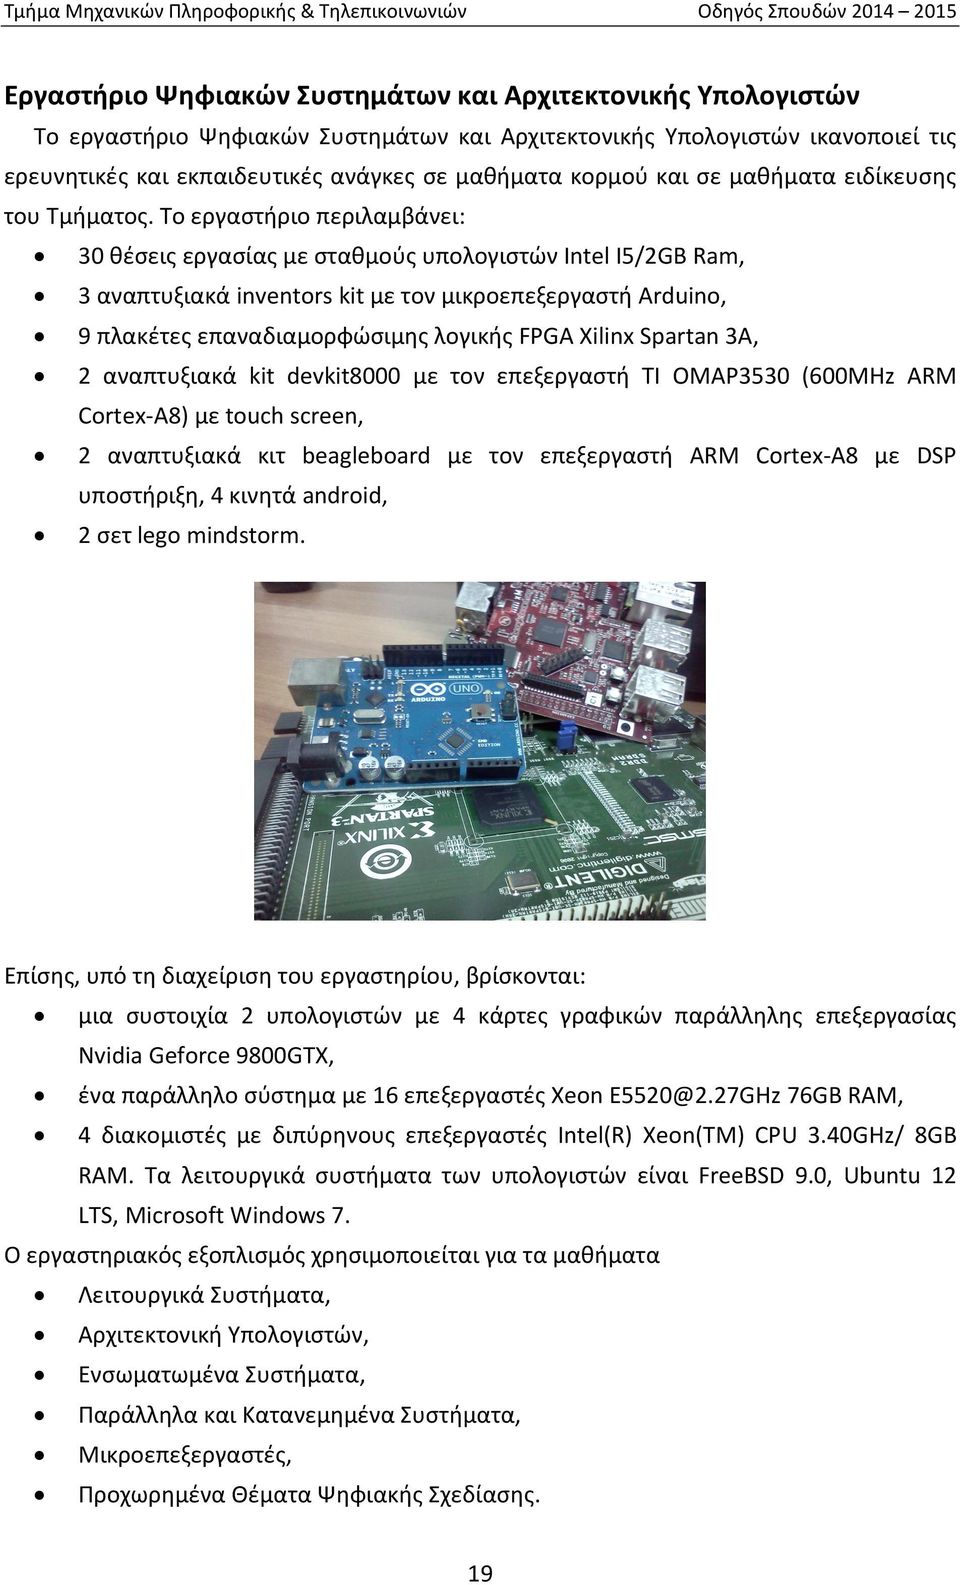 Το εργαστήριο περιλαμβάνει: 30 θέσεις εργασίας με σταθμούς υπολογιστών Intel I5/2GB Ram, 3 αναπτυξιακά inventors kit με τον μικροεπεξεργαστή Arduino, 9 πλακέτες επαναδιαμορφώσιμης λογικής FPGA Xilinx